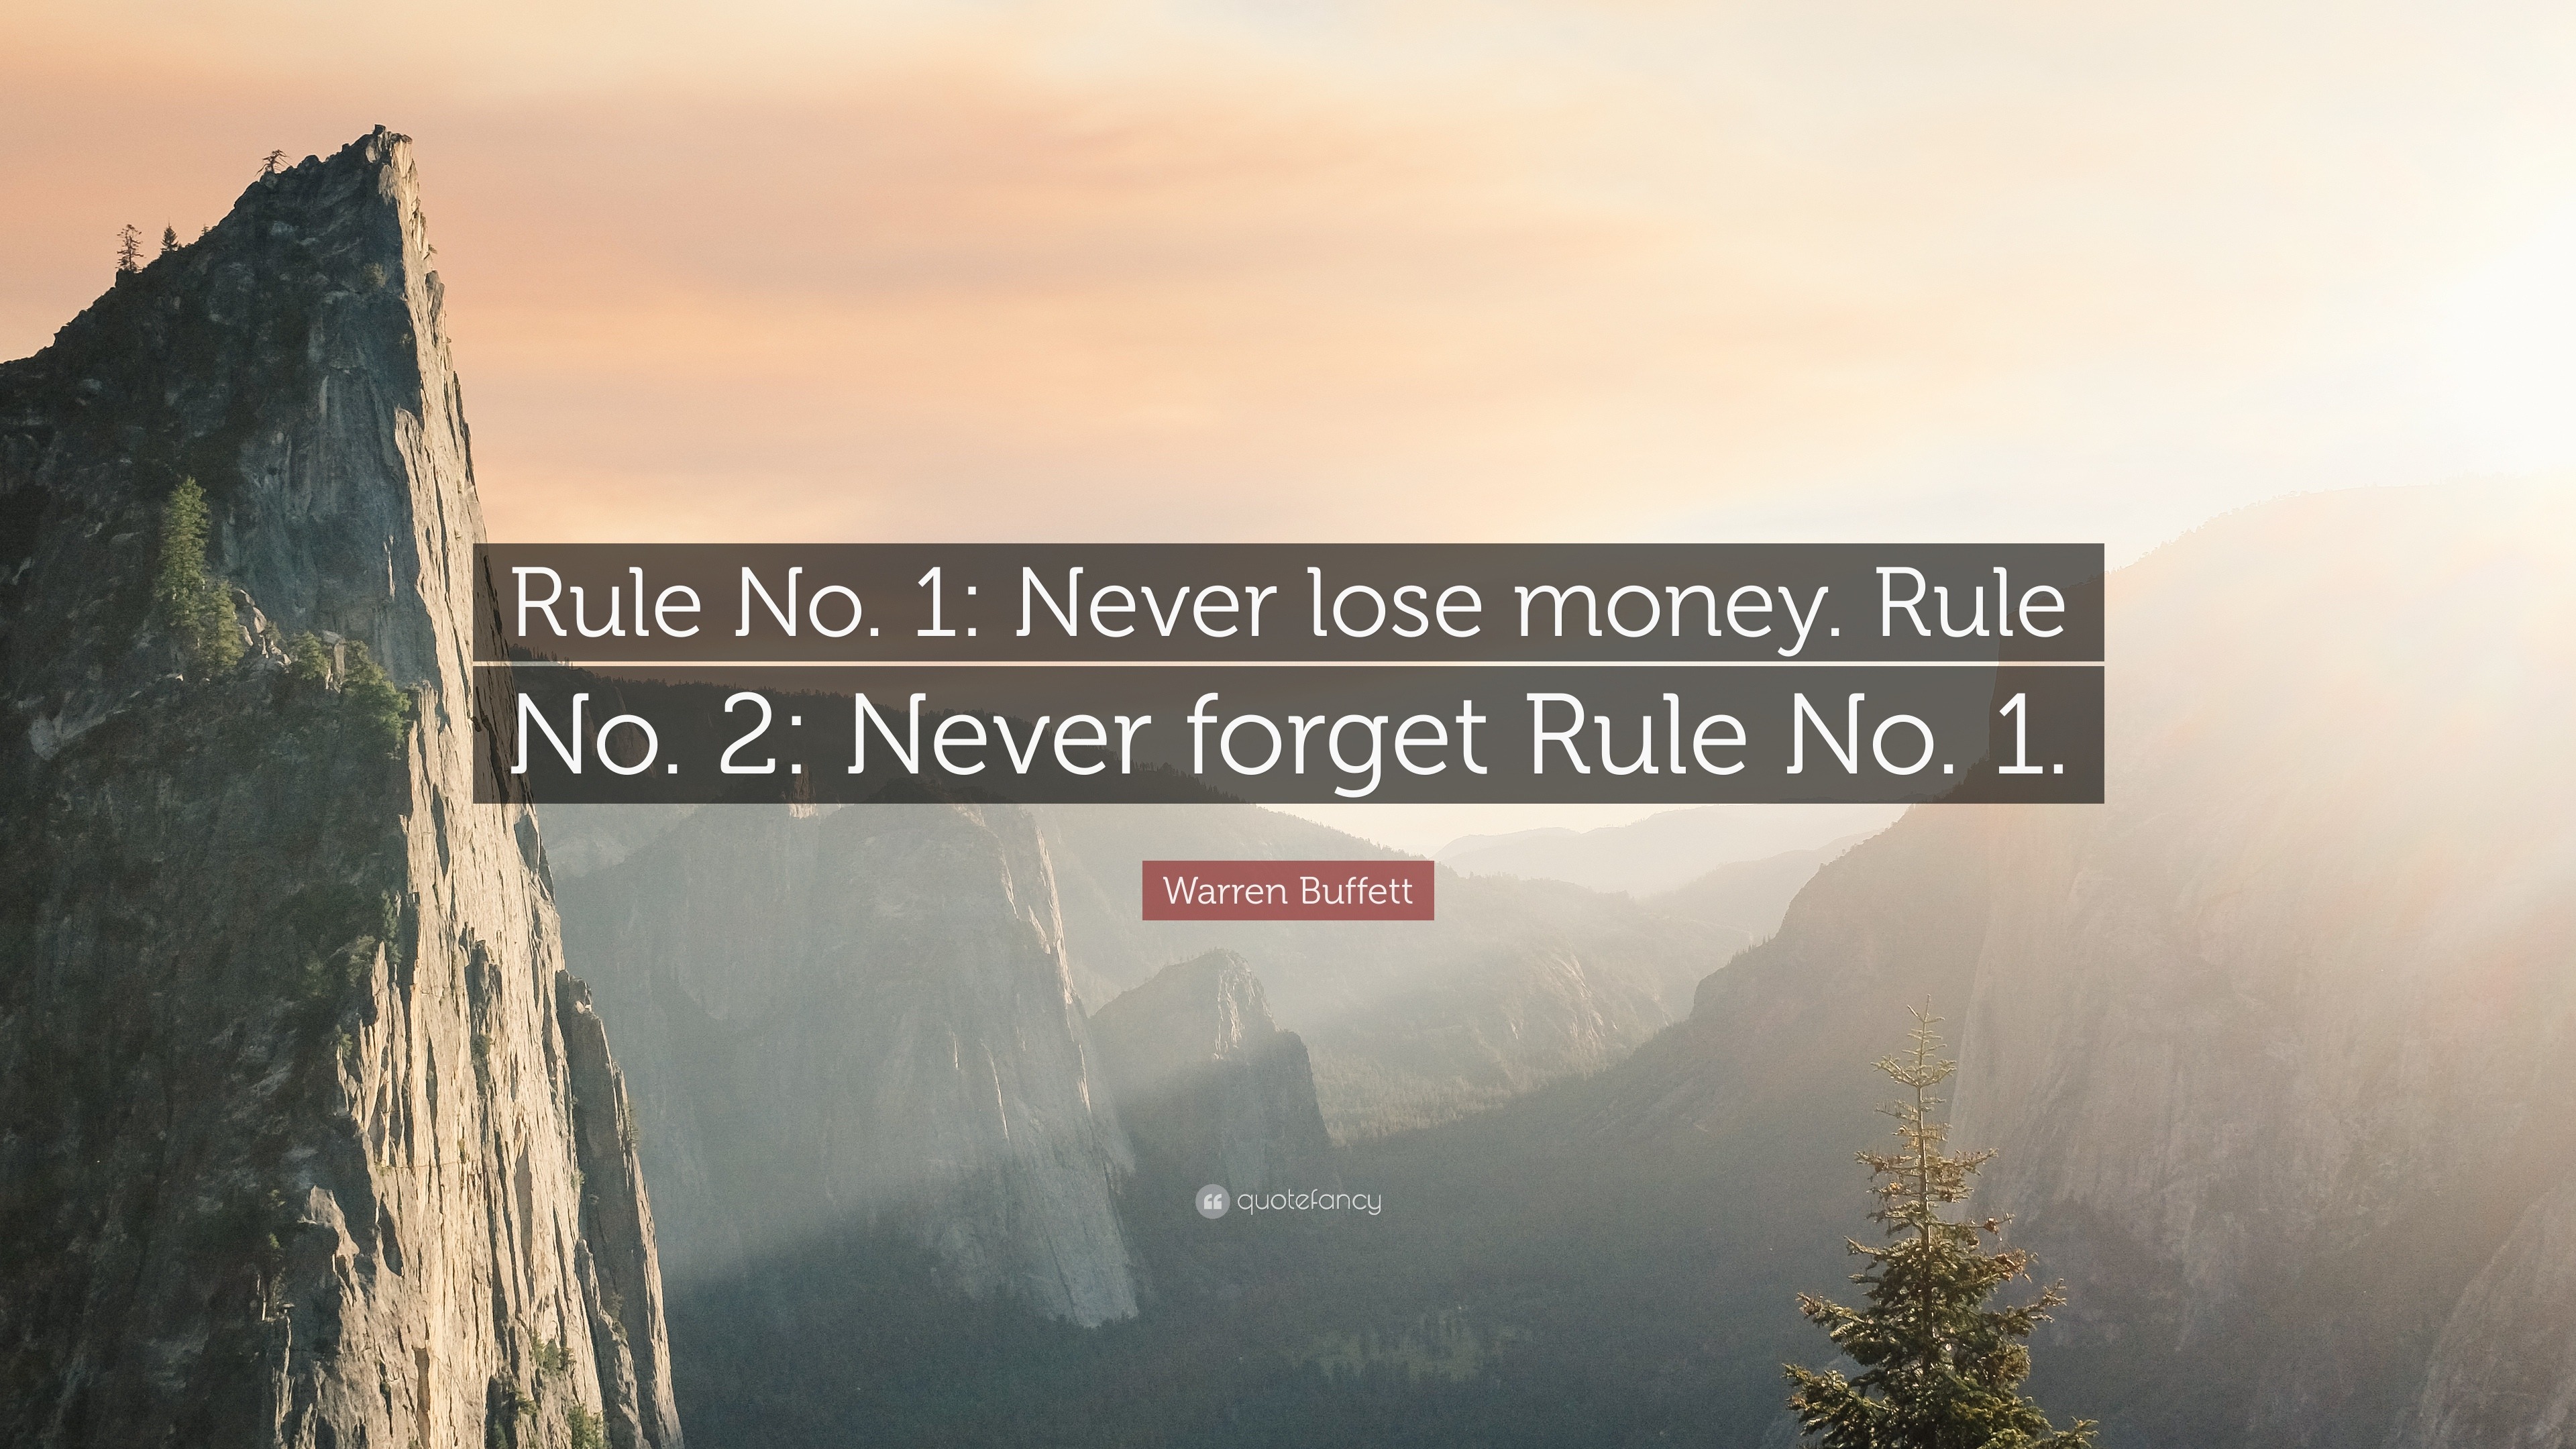 Warren Buffett Quote: "Rule No. 1: Never lose money. Rule ...